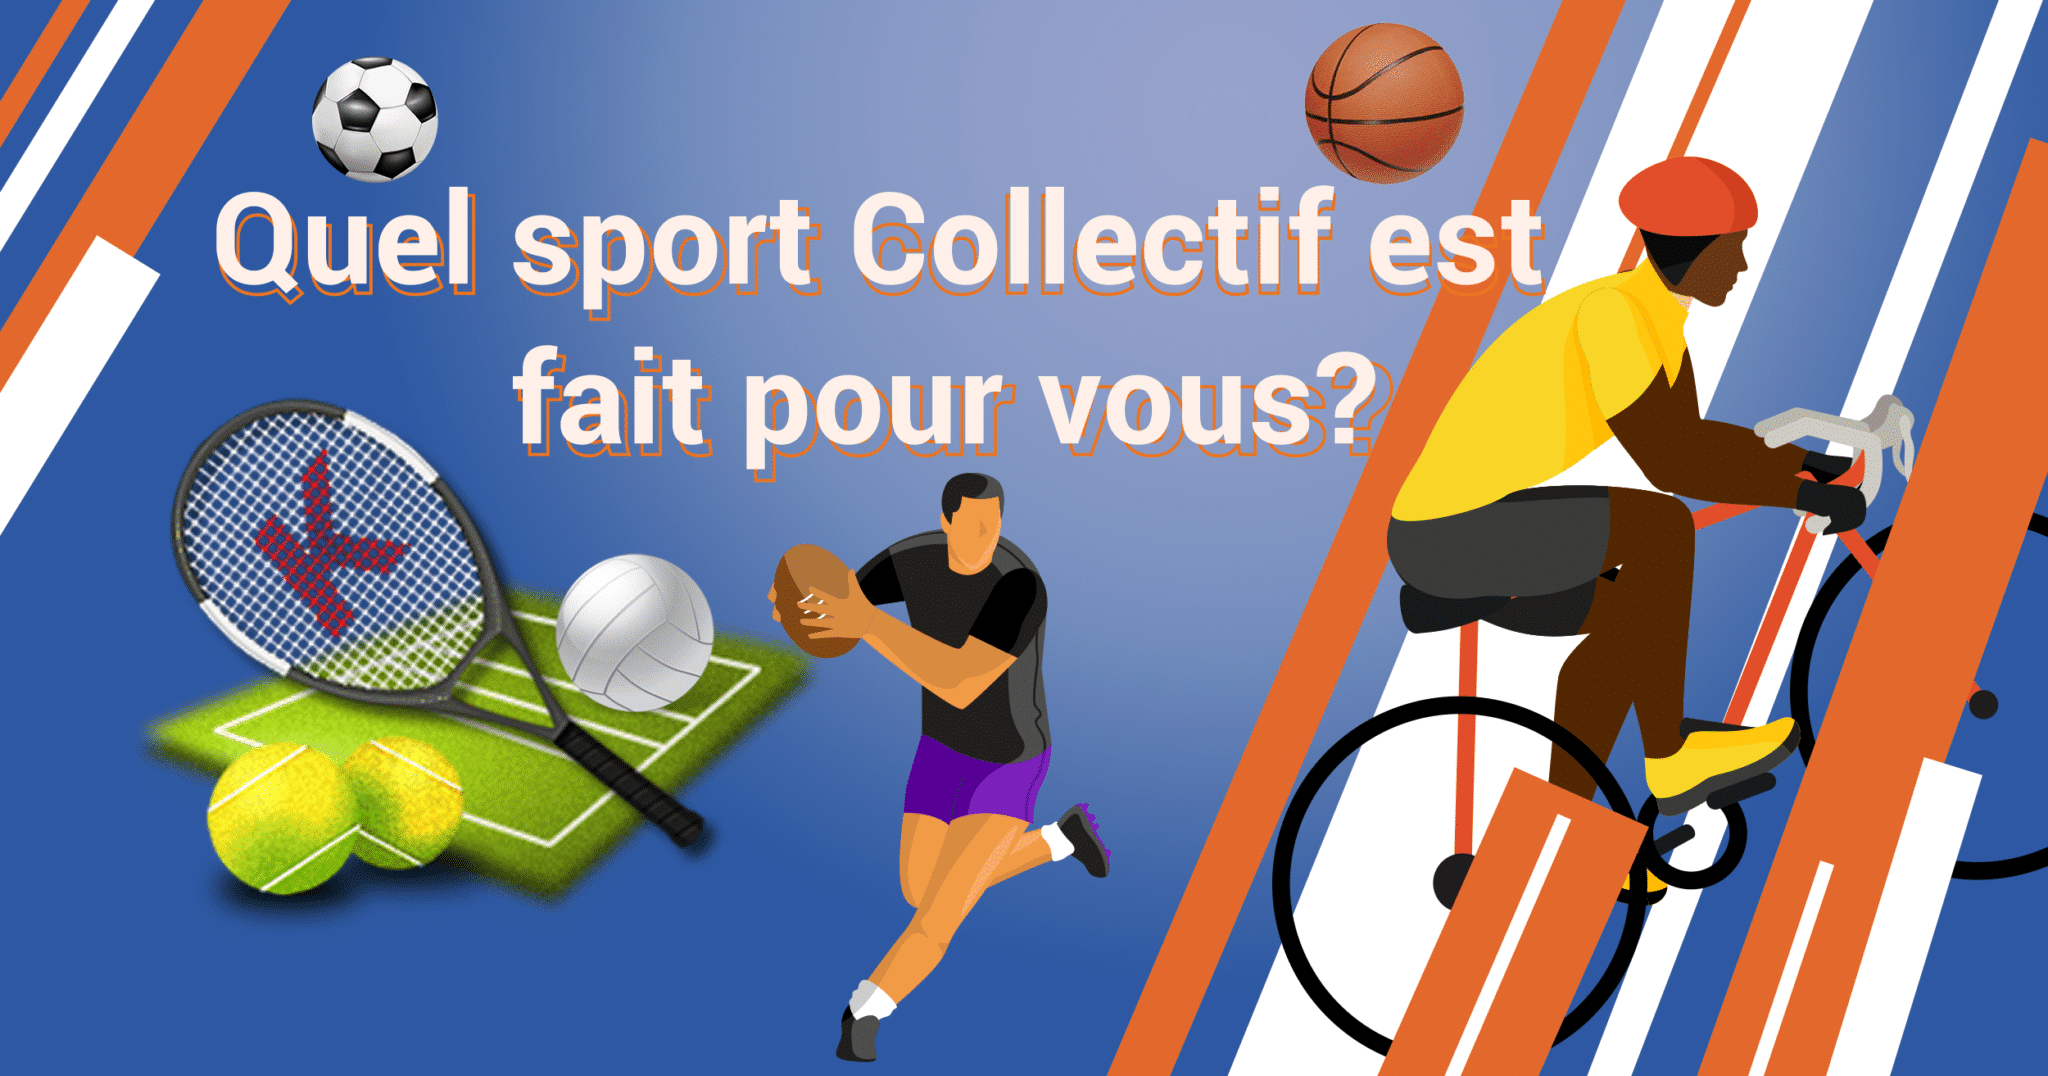 Quel sport sport collectif est fait pour vous?